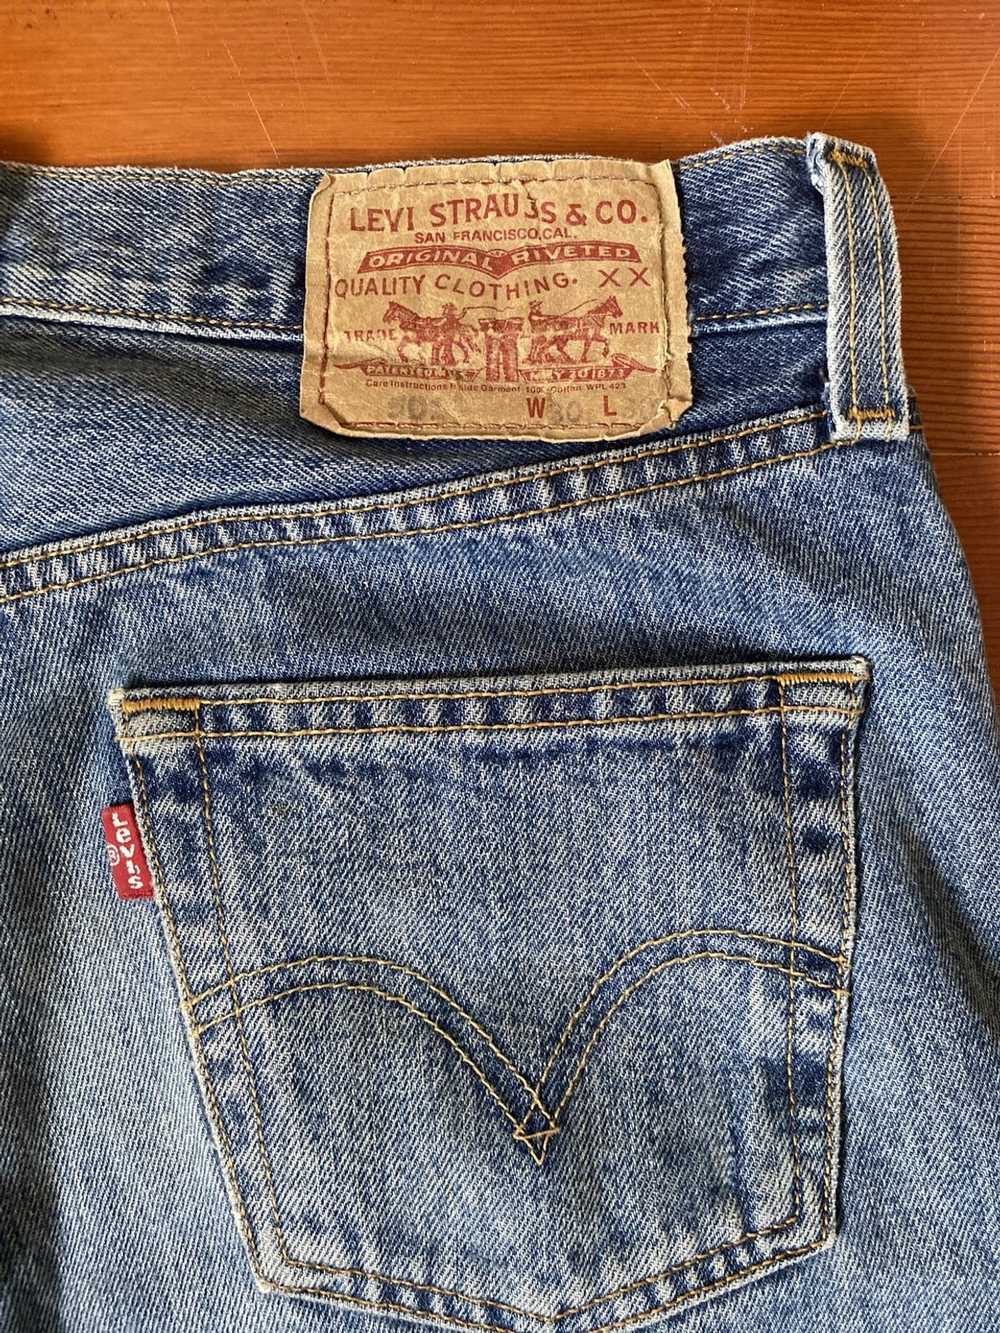 Levi's × Levi's Vintage Clothing Vintage Levi’s 5… - image 5